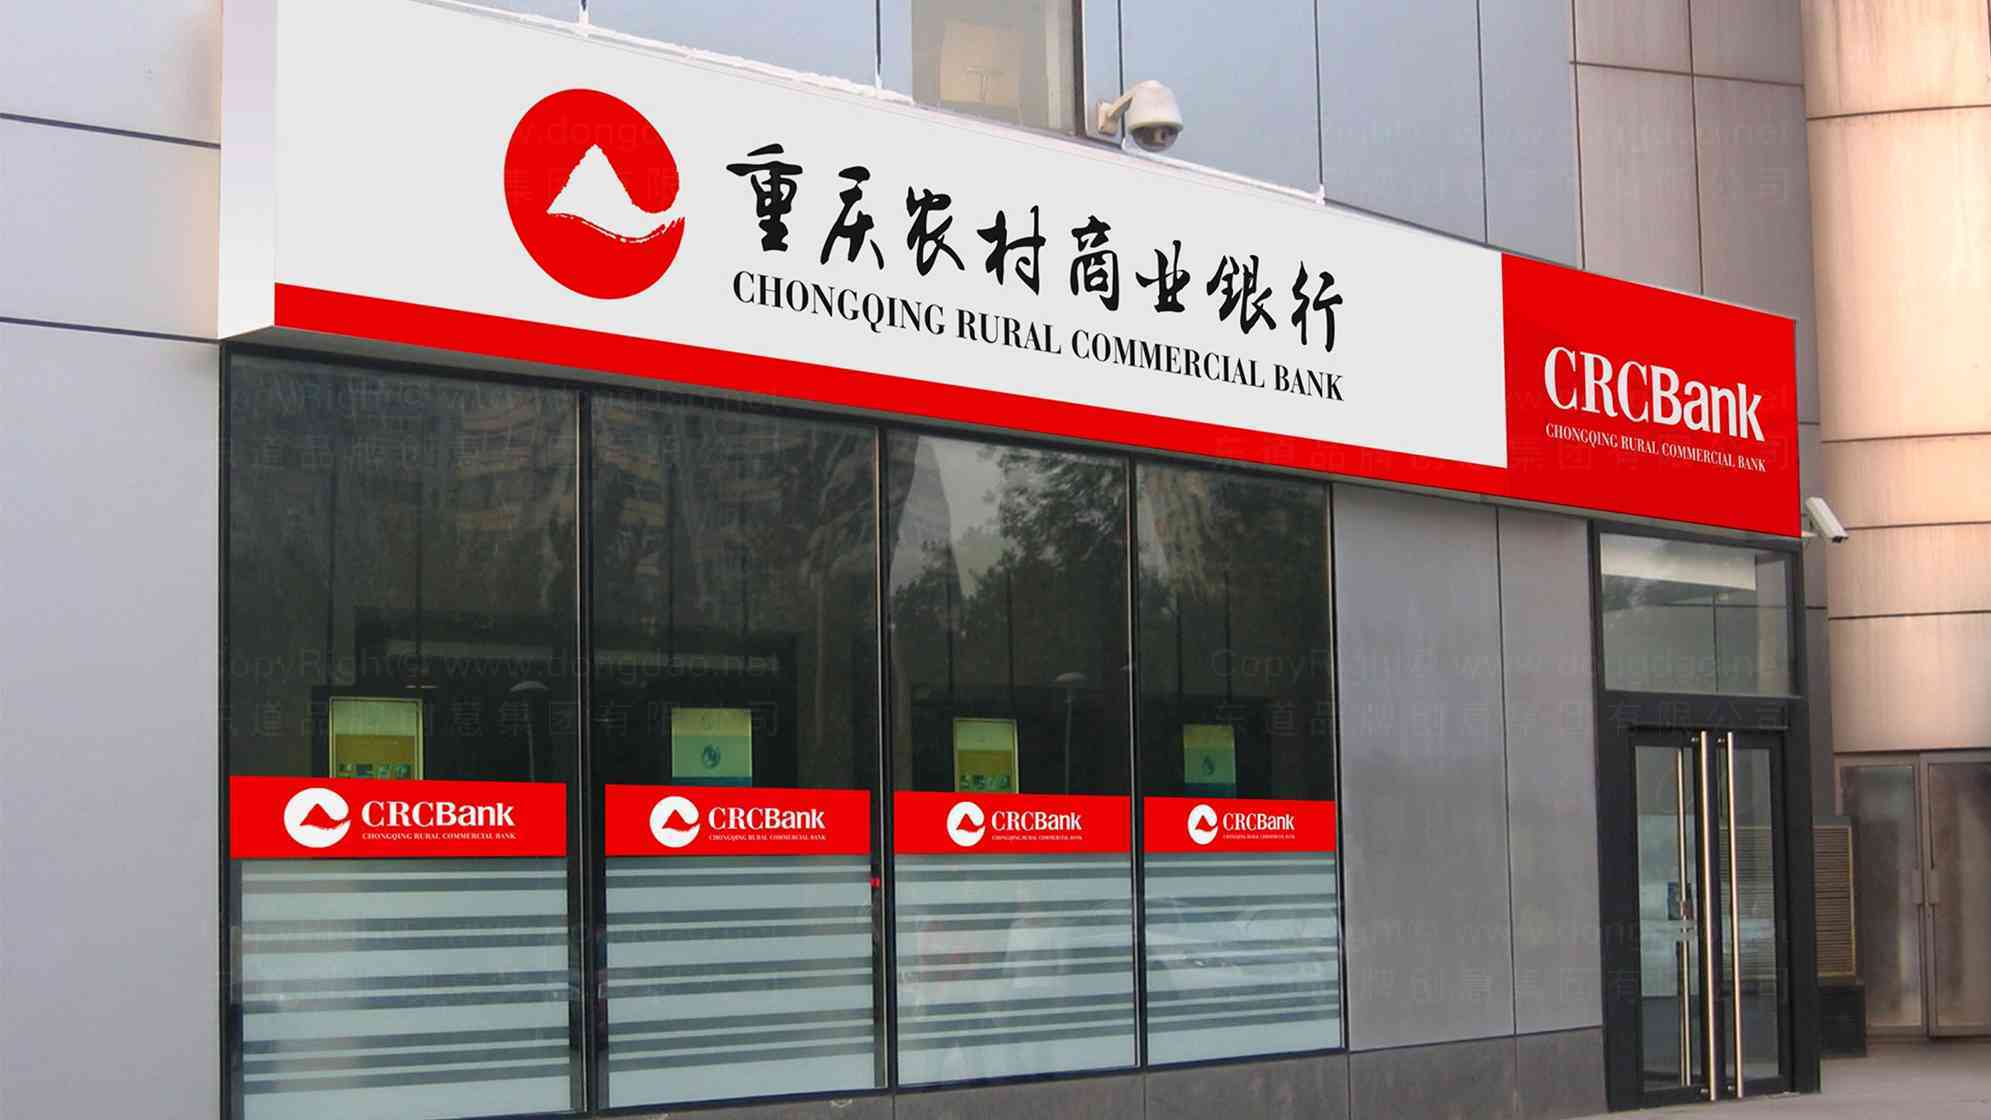 重庆农村商业银行品牌logo设计图片素材_3